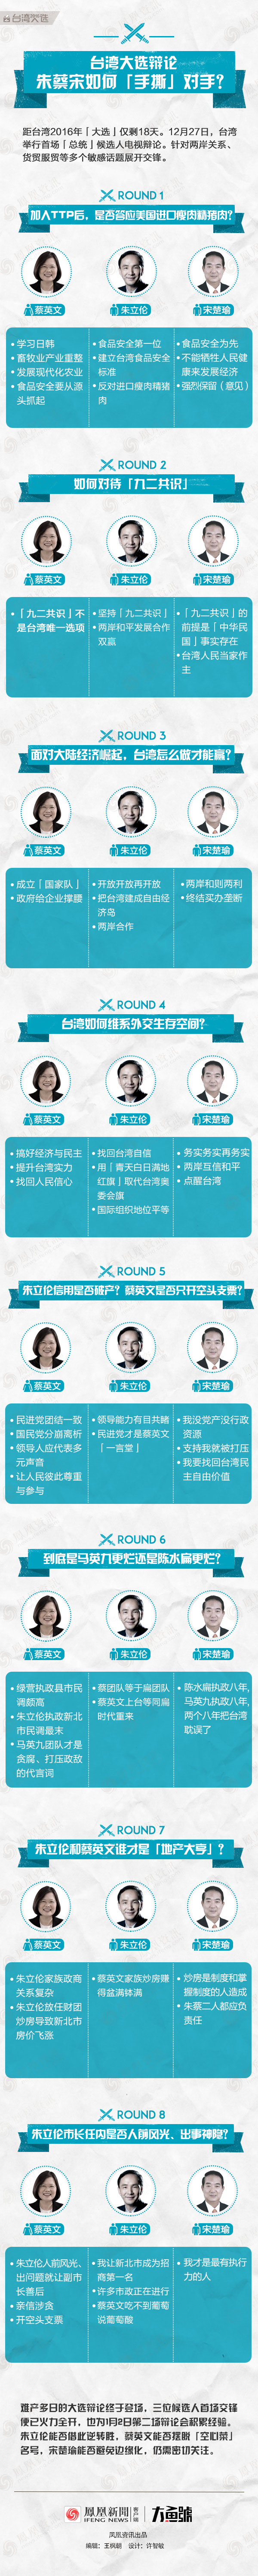 吵翻天？一图回顾台湾大选辩论交锋议题